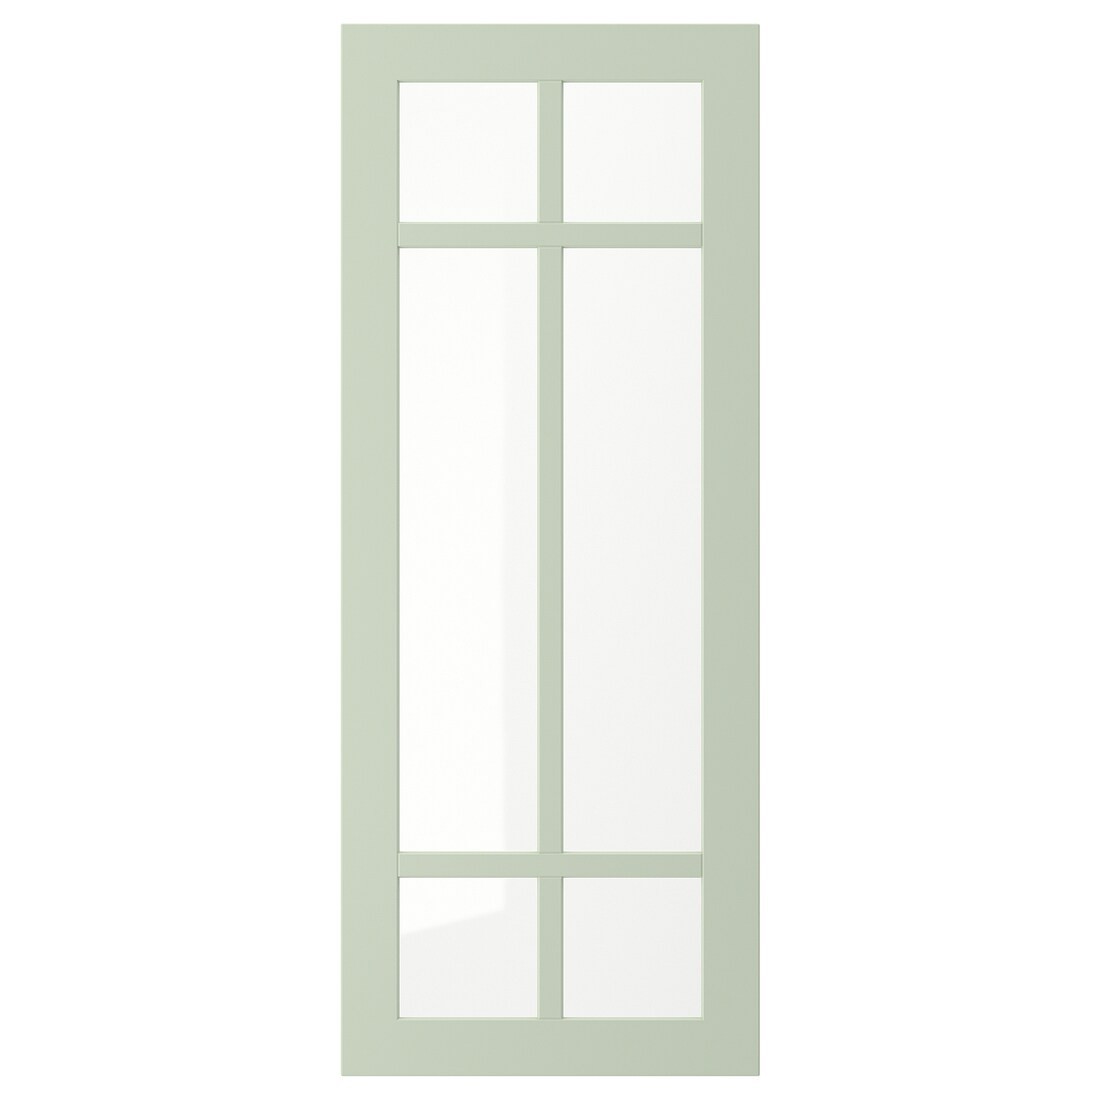 IKEA STENSUND СТЕНСУНД Скляні двері, світло-зелений, 40x100 см 70524019 705.240.19